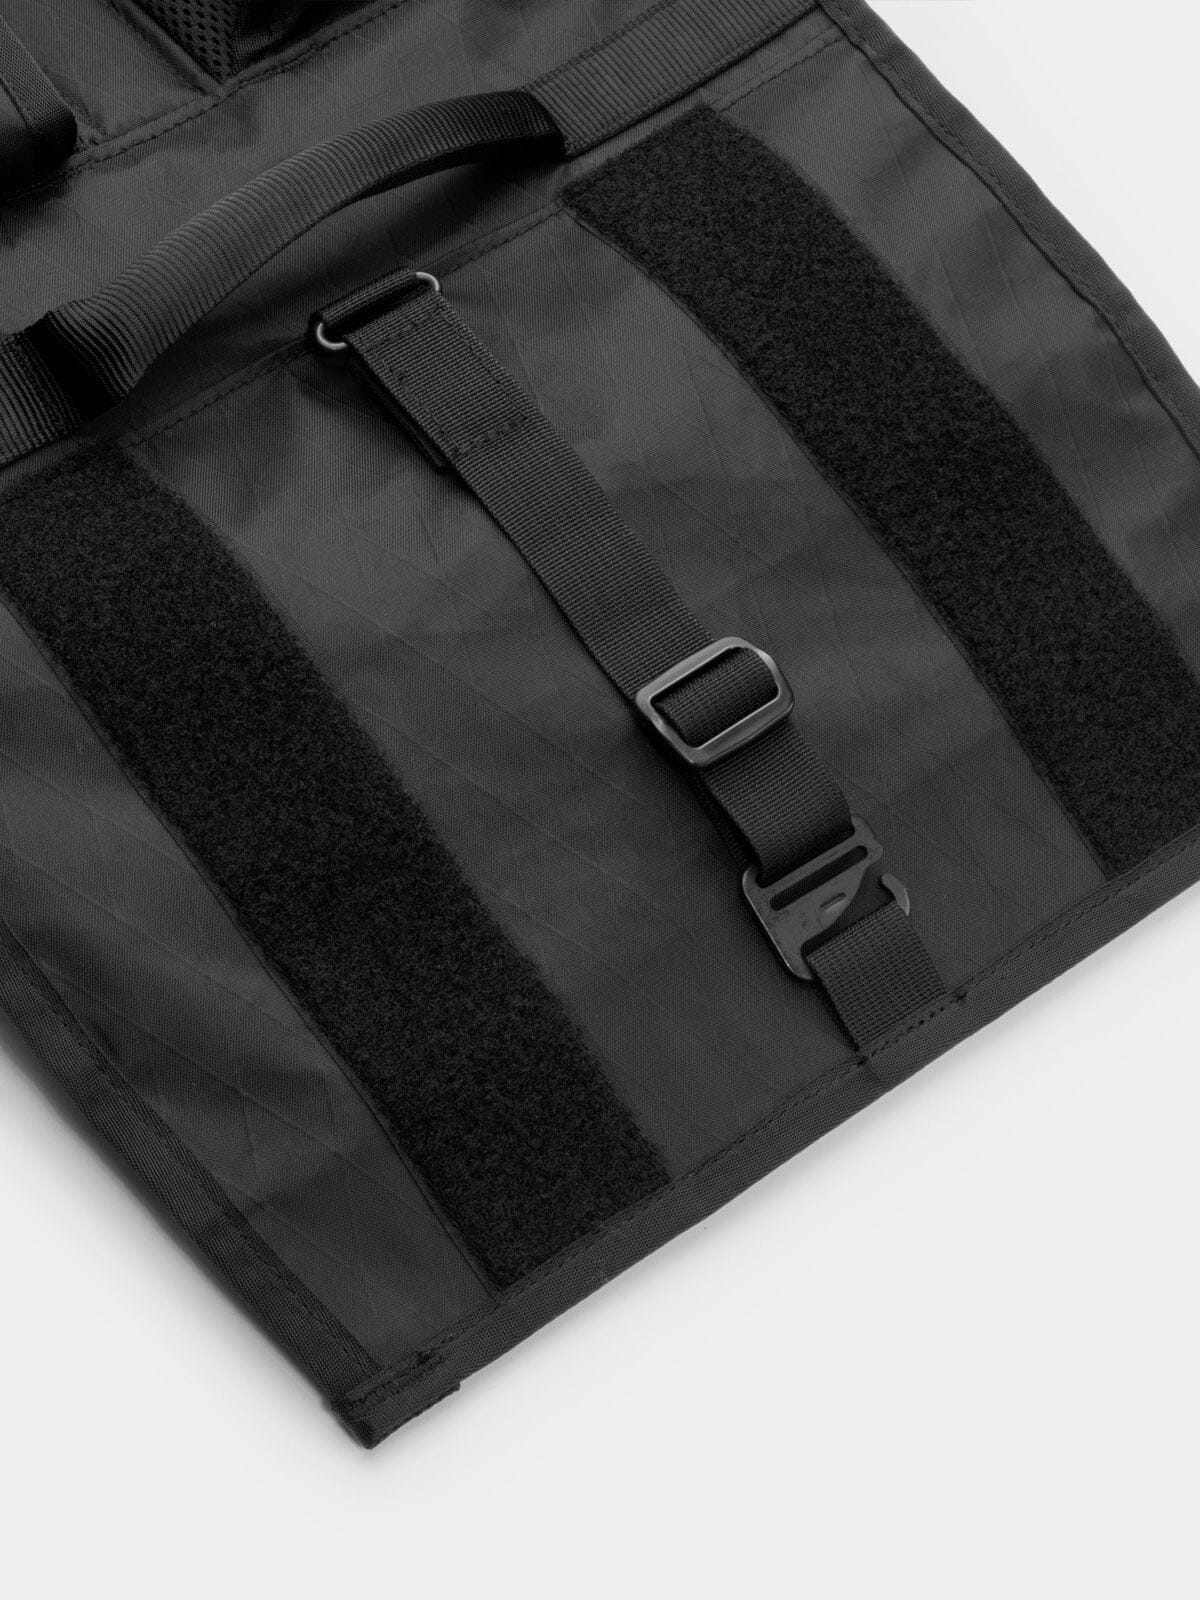 Rhake by Mission Workshop - Weatherproof Bags & Technical Apparel - San Francisco & Los Angeles - Construit pour durer - Garanti pour toujours